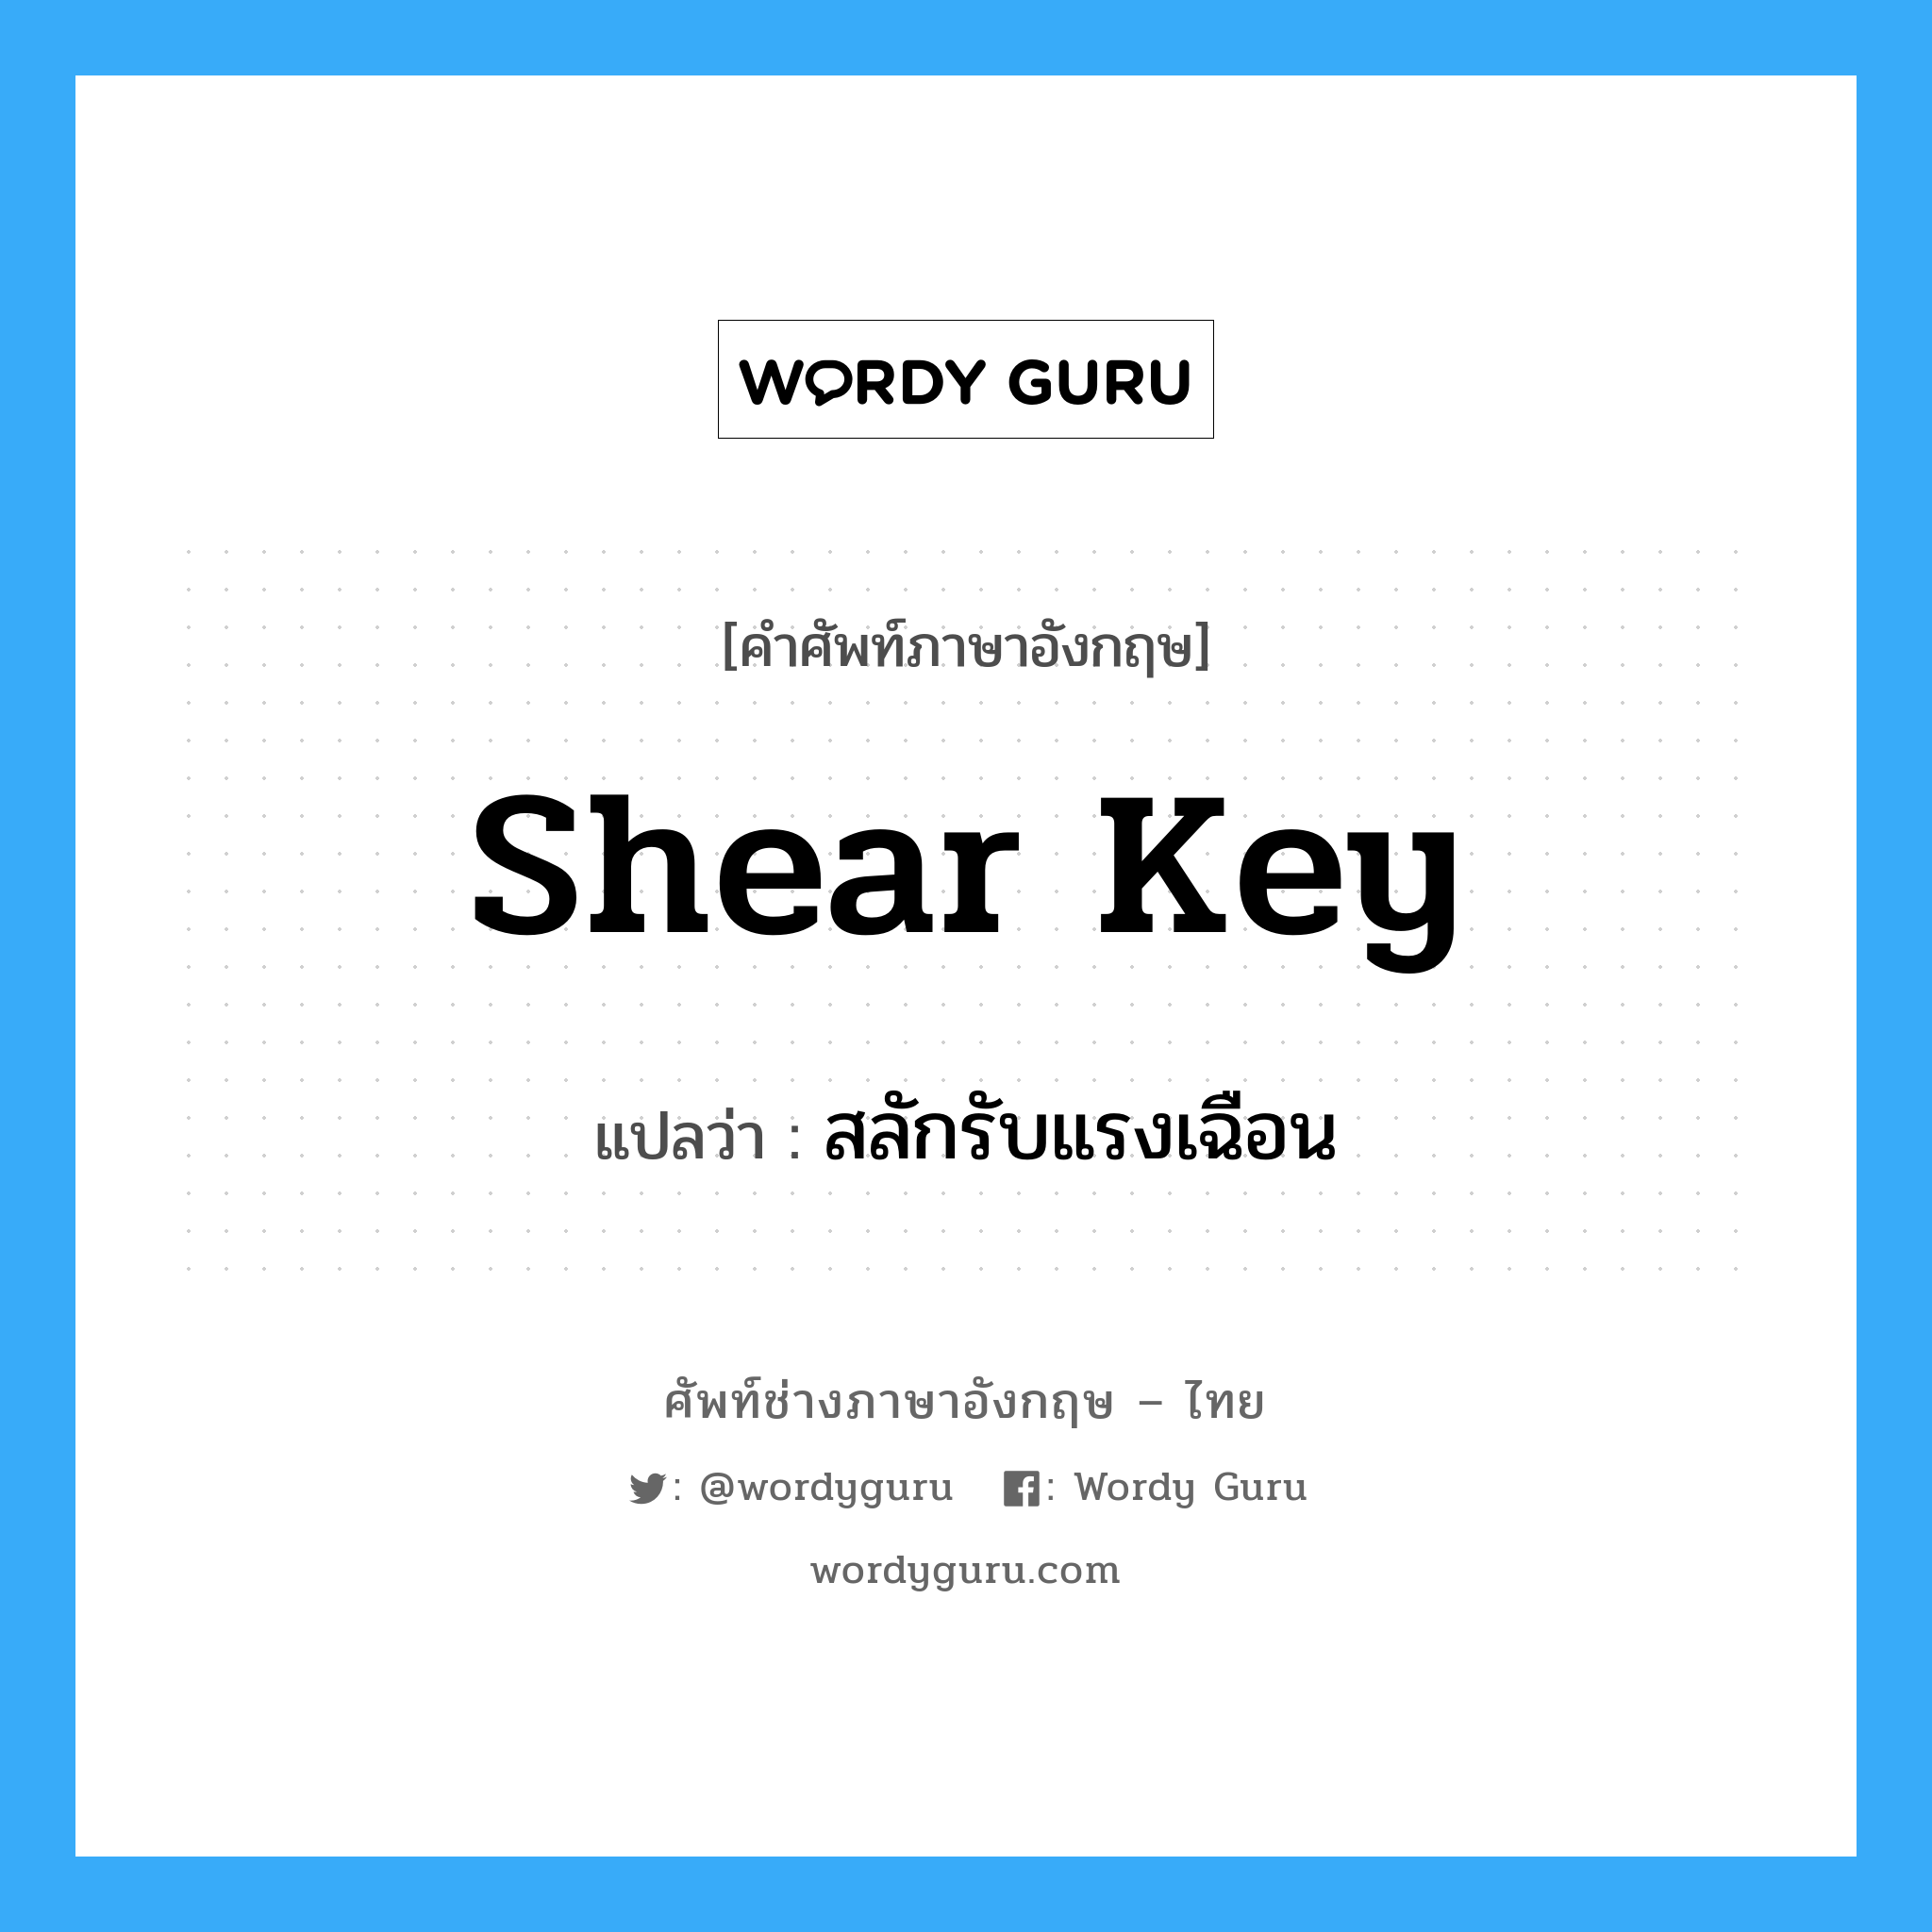 สลักรับแรงเฉือน ภาษาอังกฤษ?, คำศัพท์ช่างภาษาอังกฤษ - ไทย สลักรับแรงเฉือน คำศัพท์ภาษาอังกฤษ สลักรับแรงเฉือน แปลว่า shear key